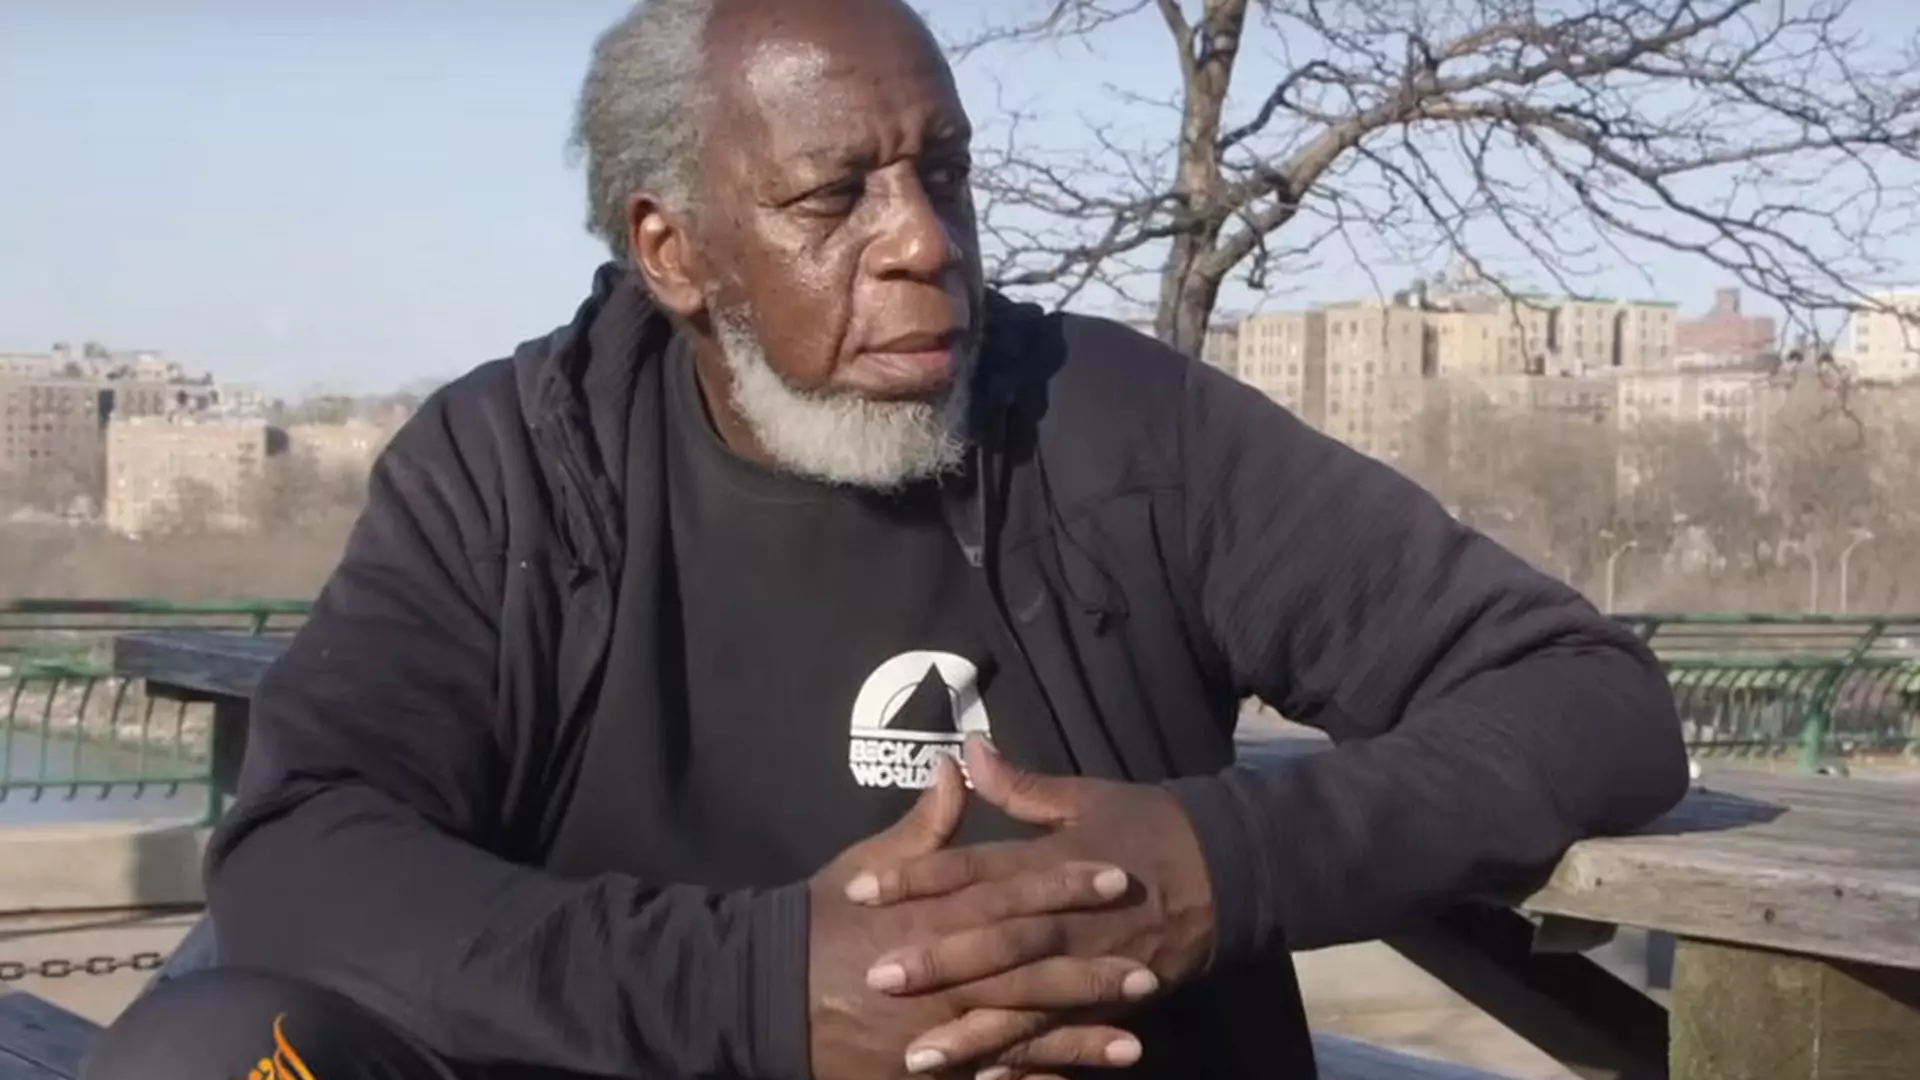 Niesamowity film: po 44 latach wyszedł z więzienia - zobacz, jak reaguje na współczesny świat